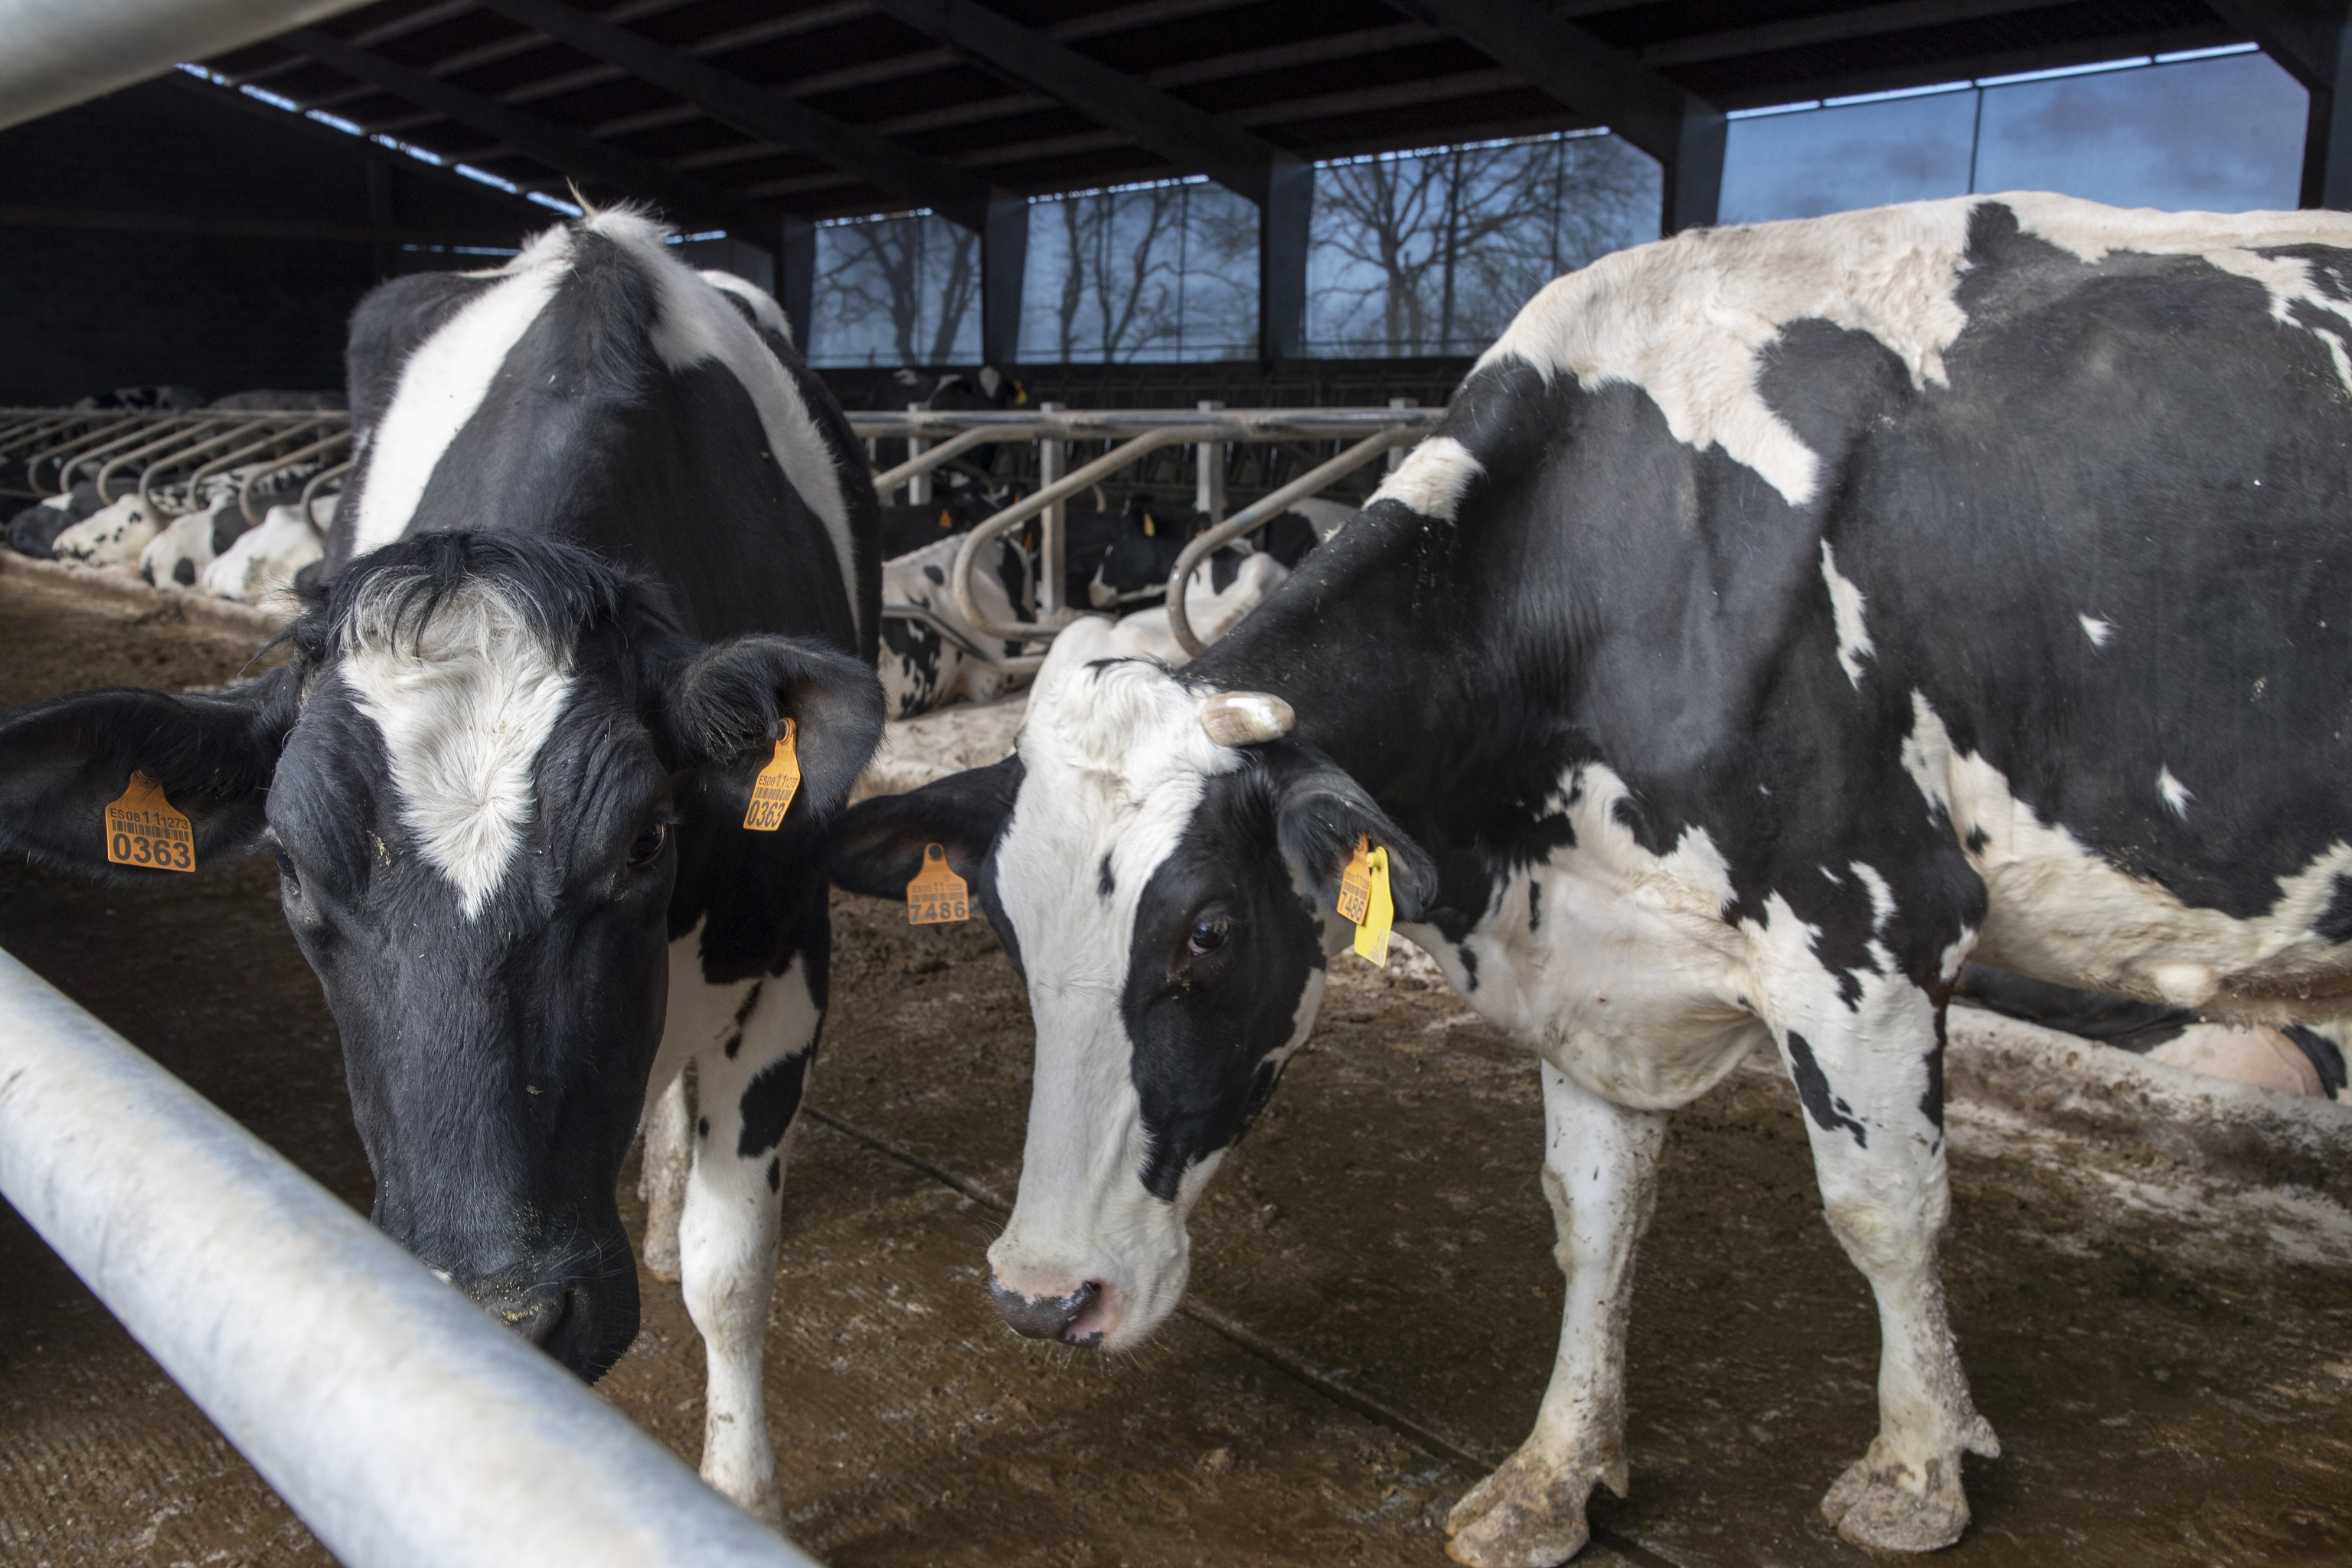 La industria láctea, al borde del colapso con más del 70% de la producción ya bloqueada por la huelga